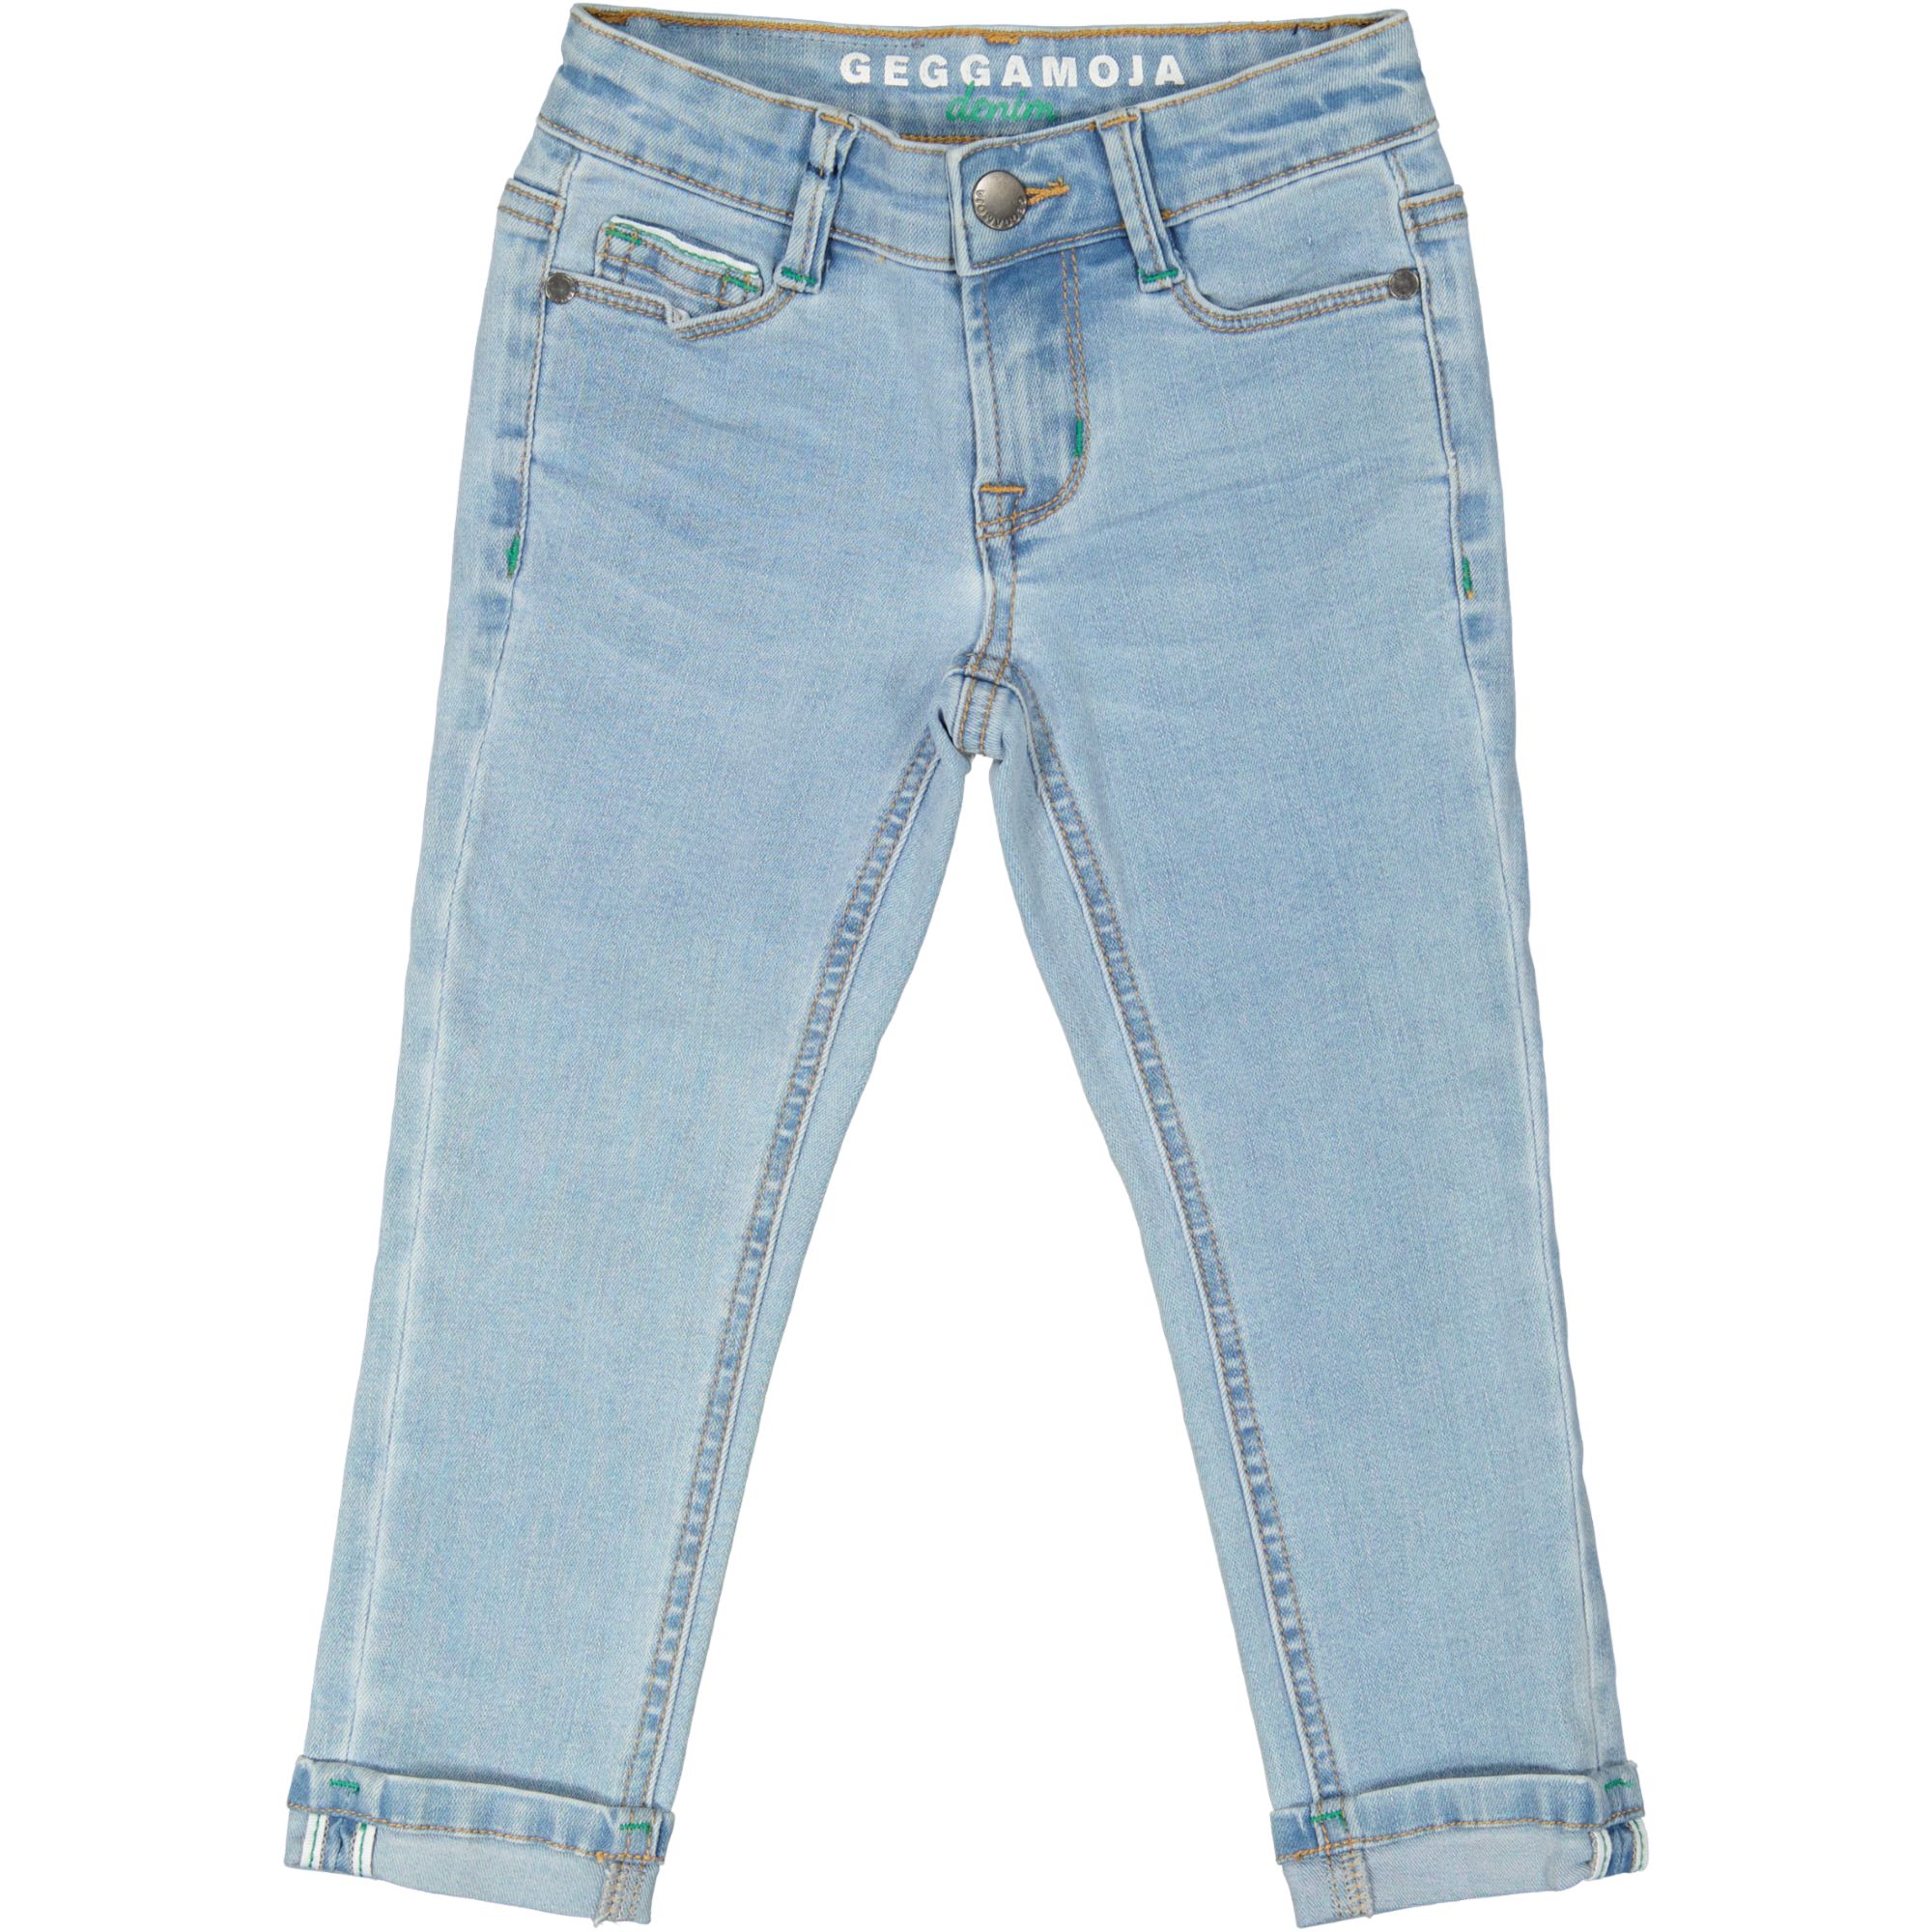 Unisex 5-pocket jeans Denim l.blue wash